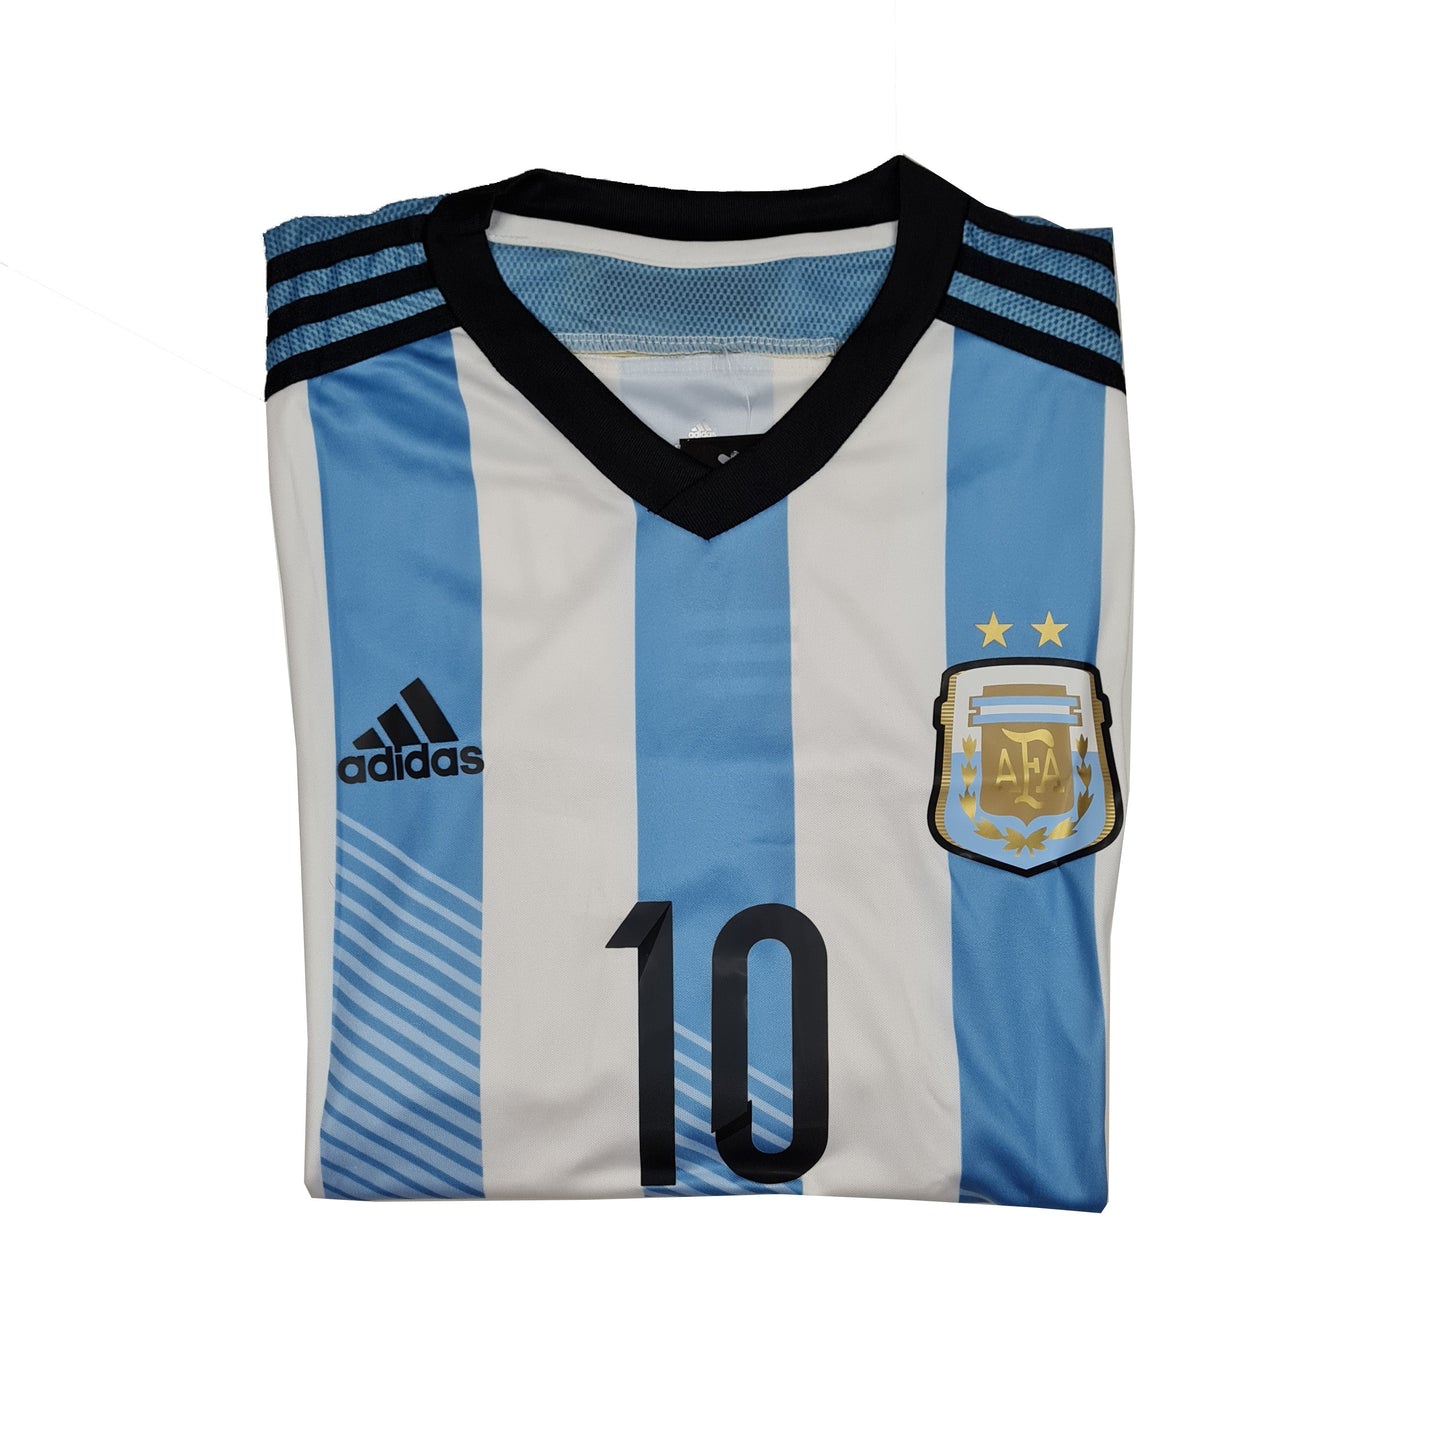 Argentina Titular 2014 ✈️ - Thunder Internacional